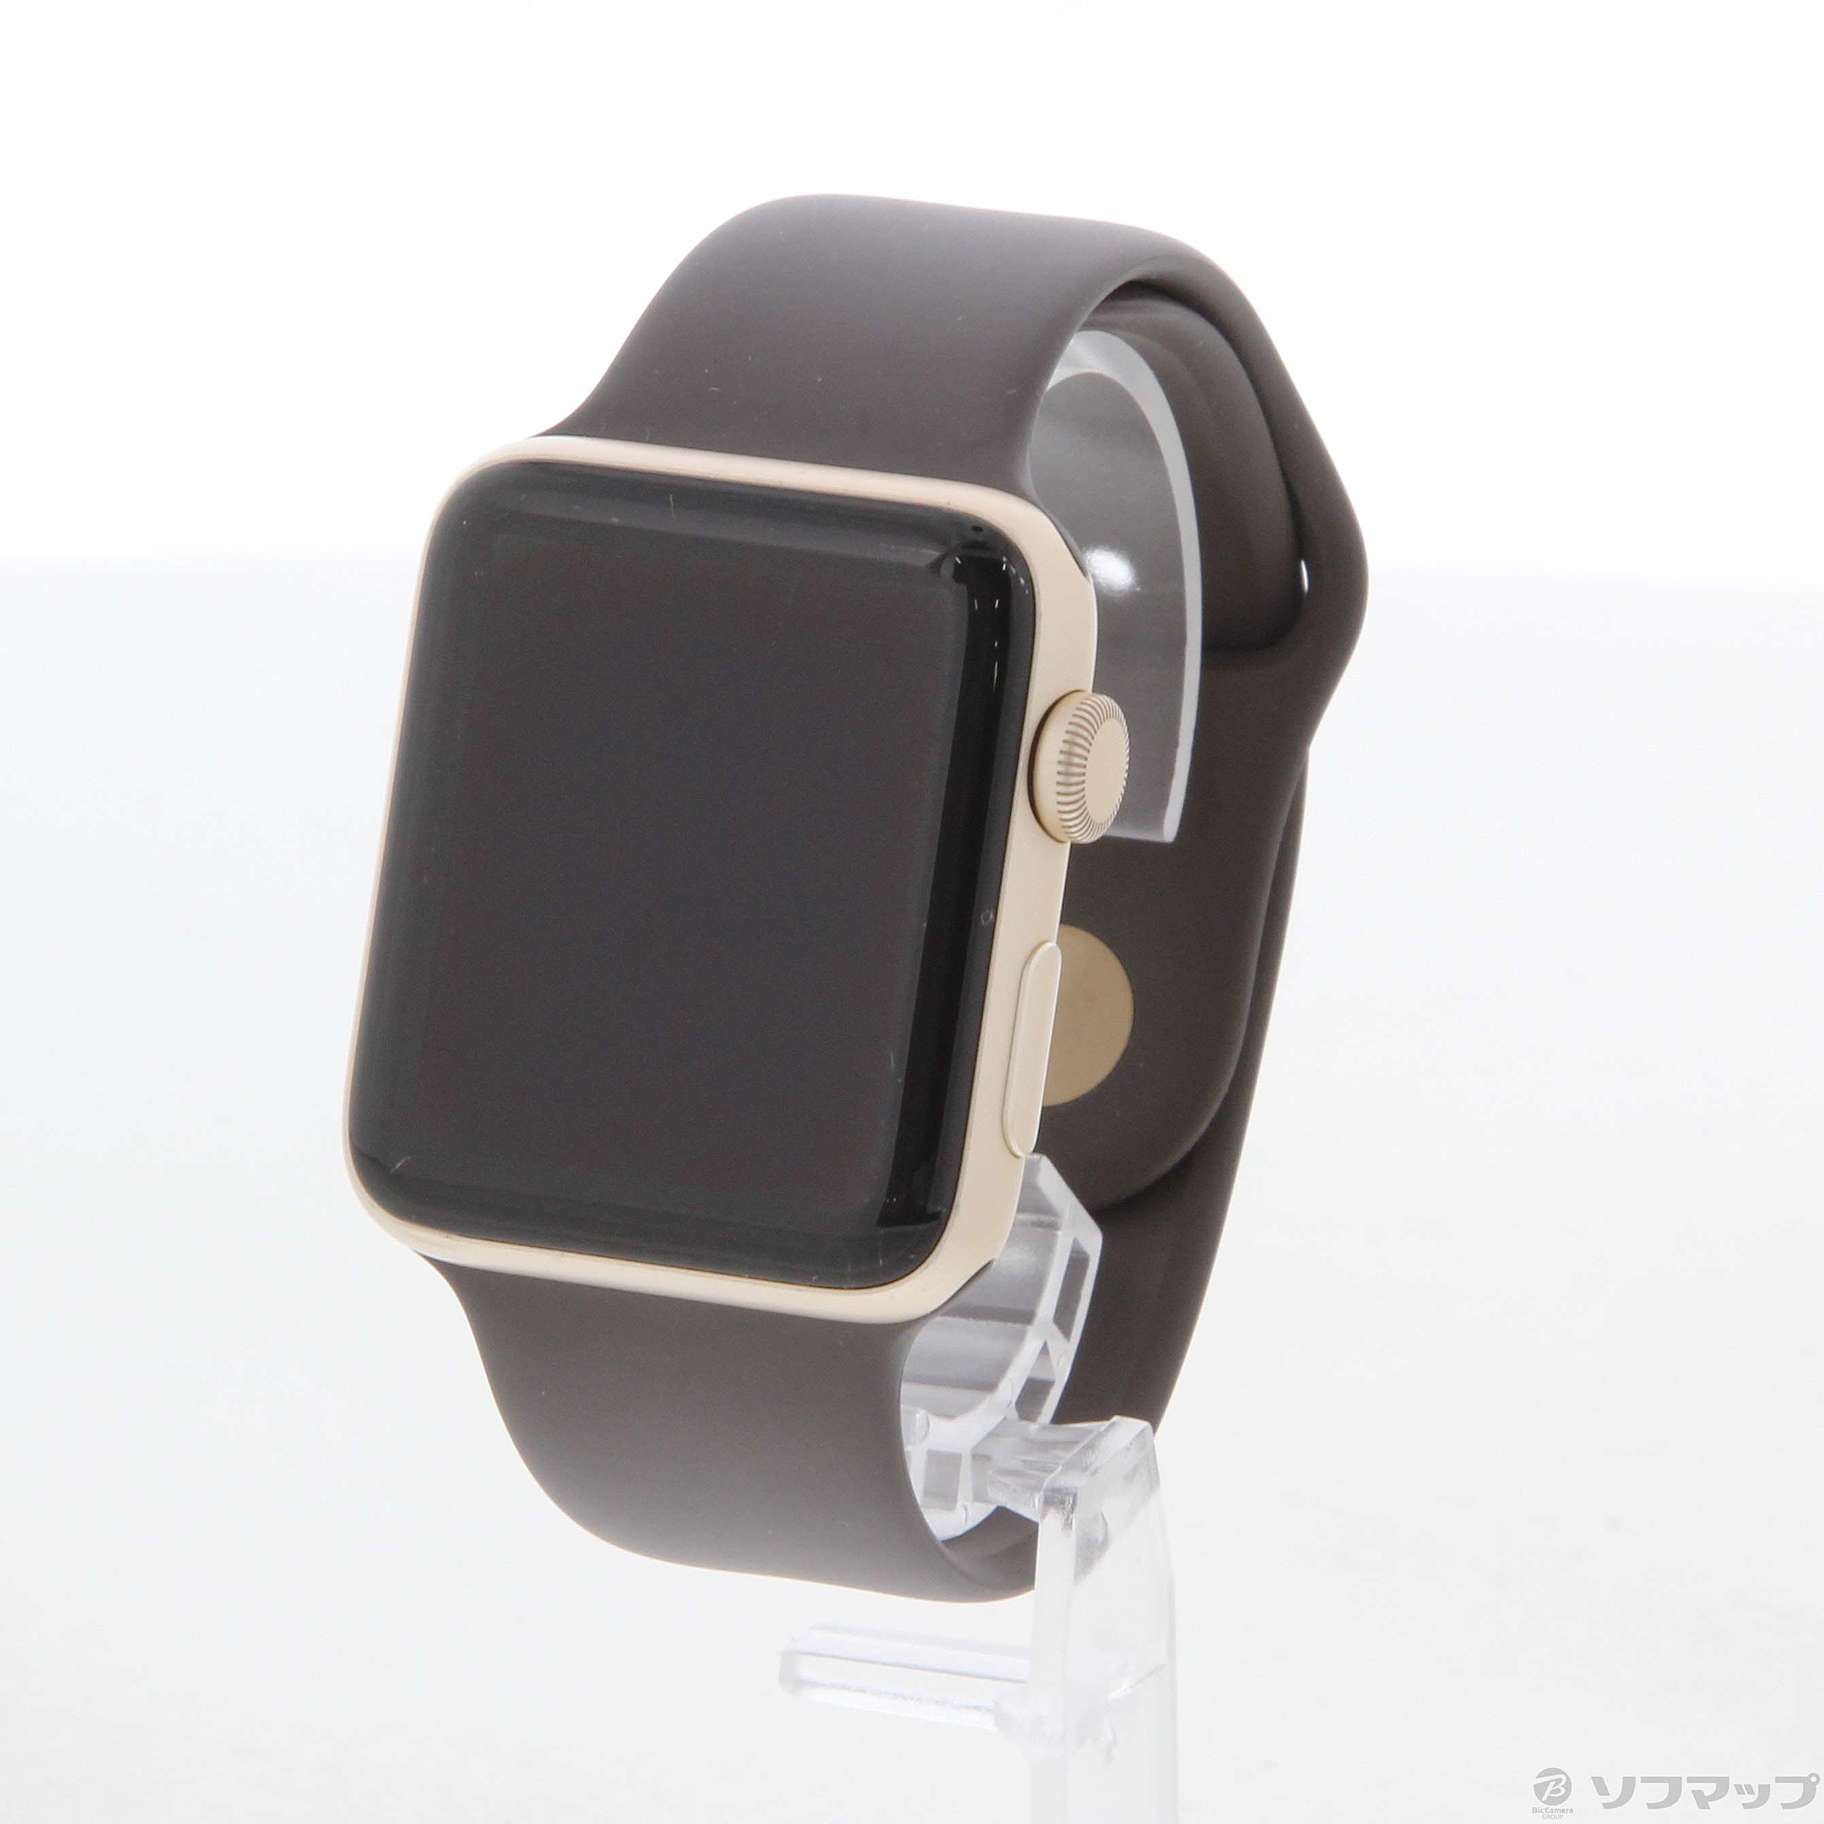 Apple Watch Series 2 42mm ゴールドアルミニウムケース ココアスポーツバンド